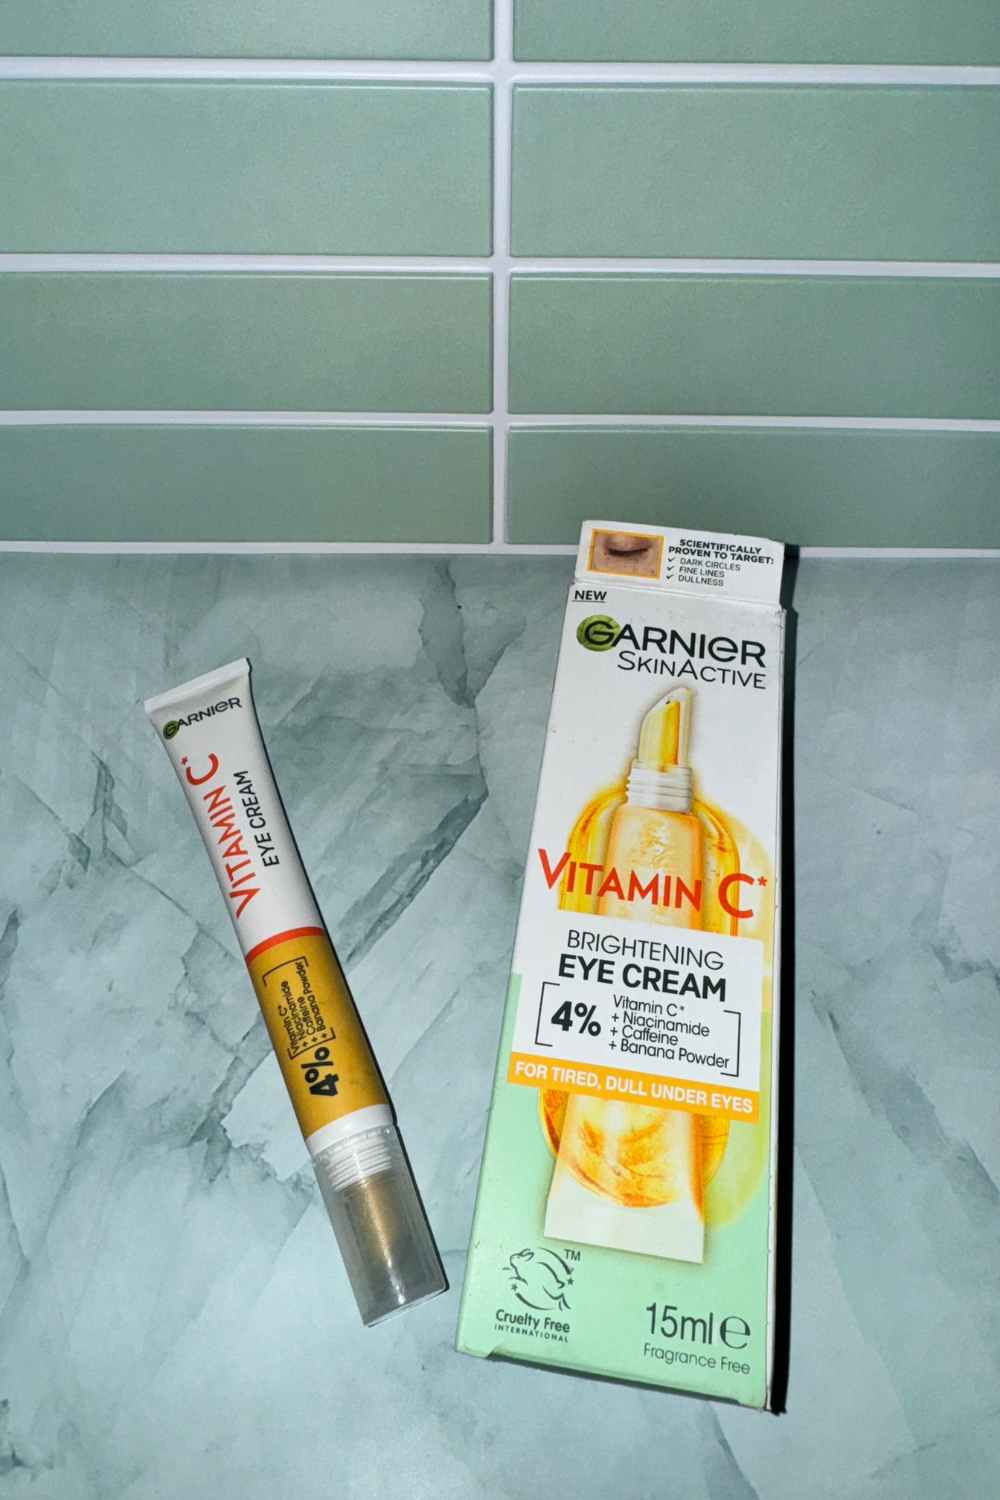 Review of Garnier Skin Active: Vitamin C Brightening Eye Cream